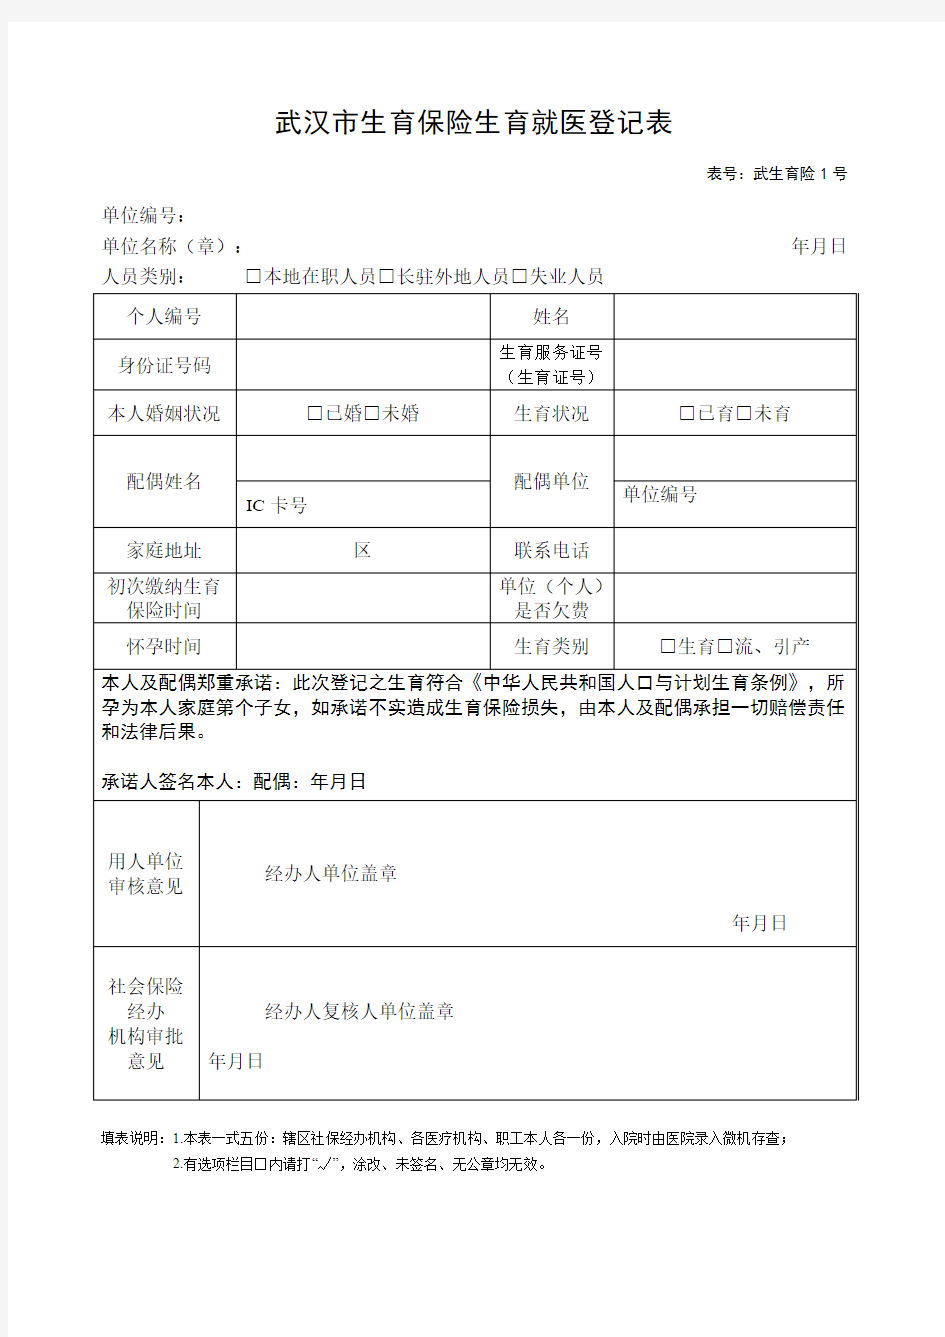 新版武汉市生育保险生育就医登记表